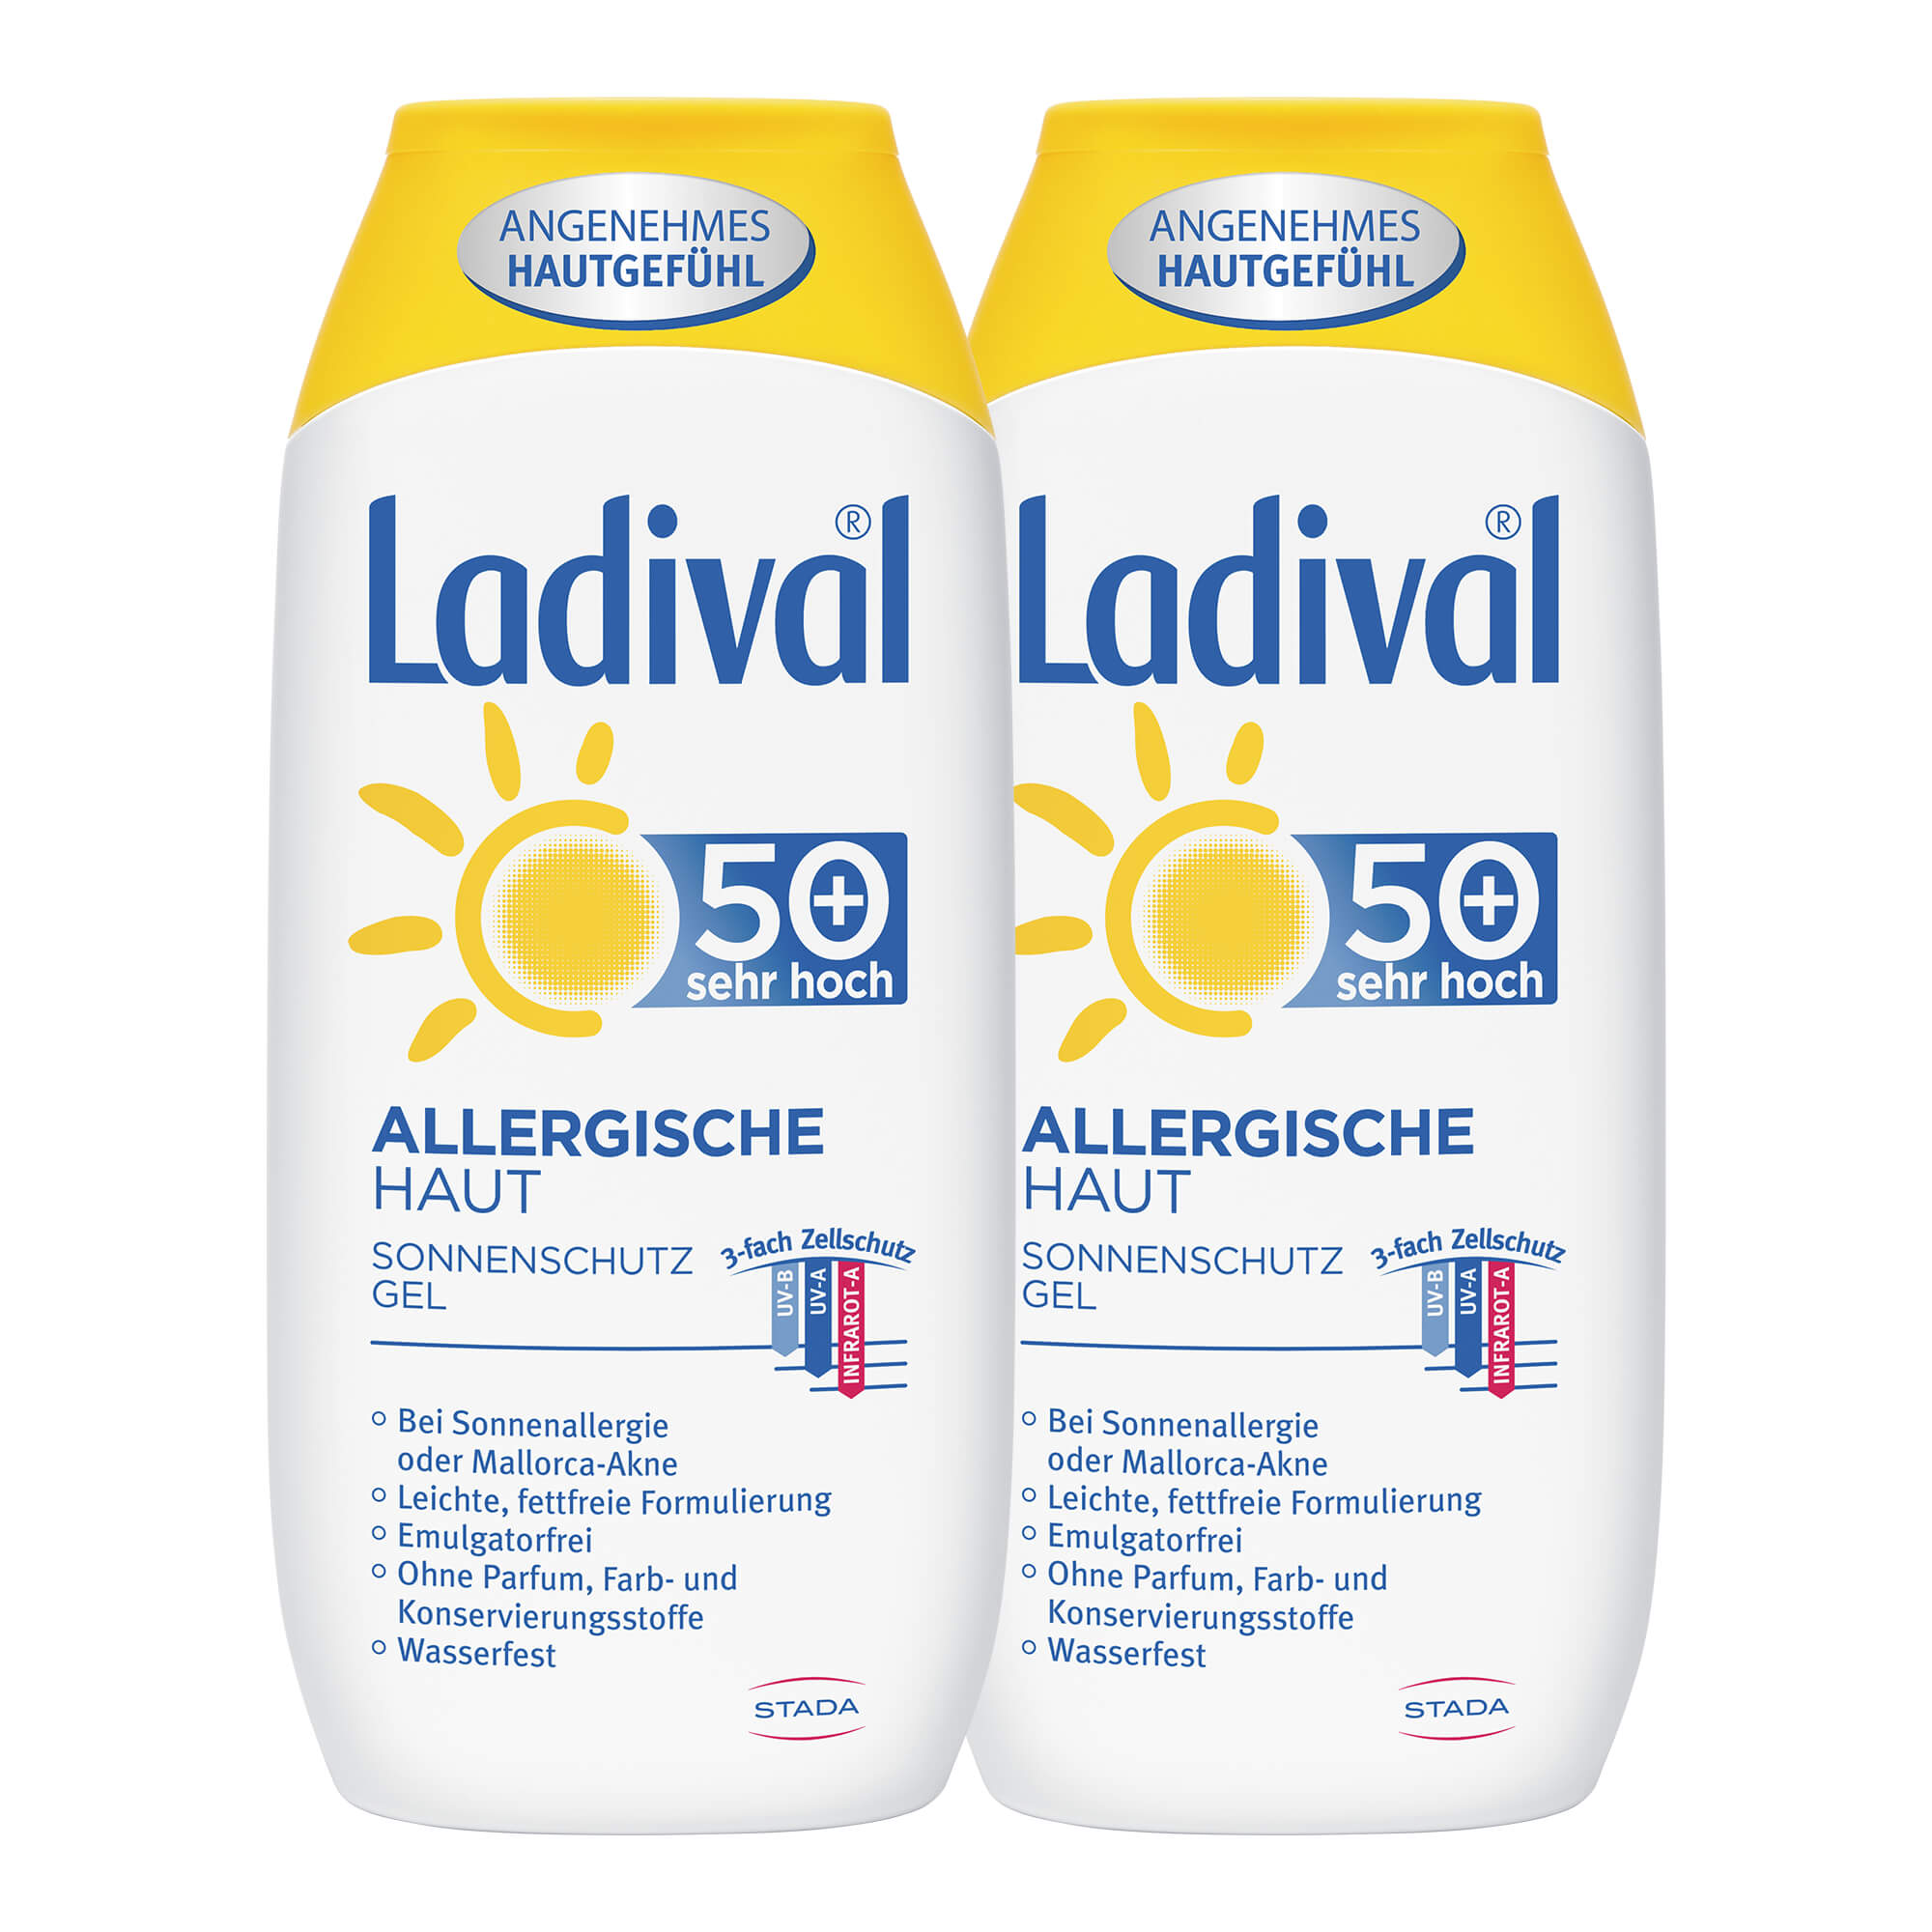 Sonnenschutz für zu Allergien neigende Haut. Mit LSF 50+. Doppelpack.